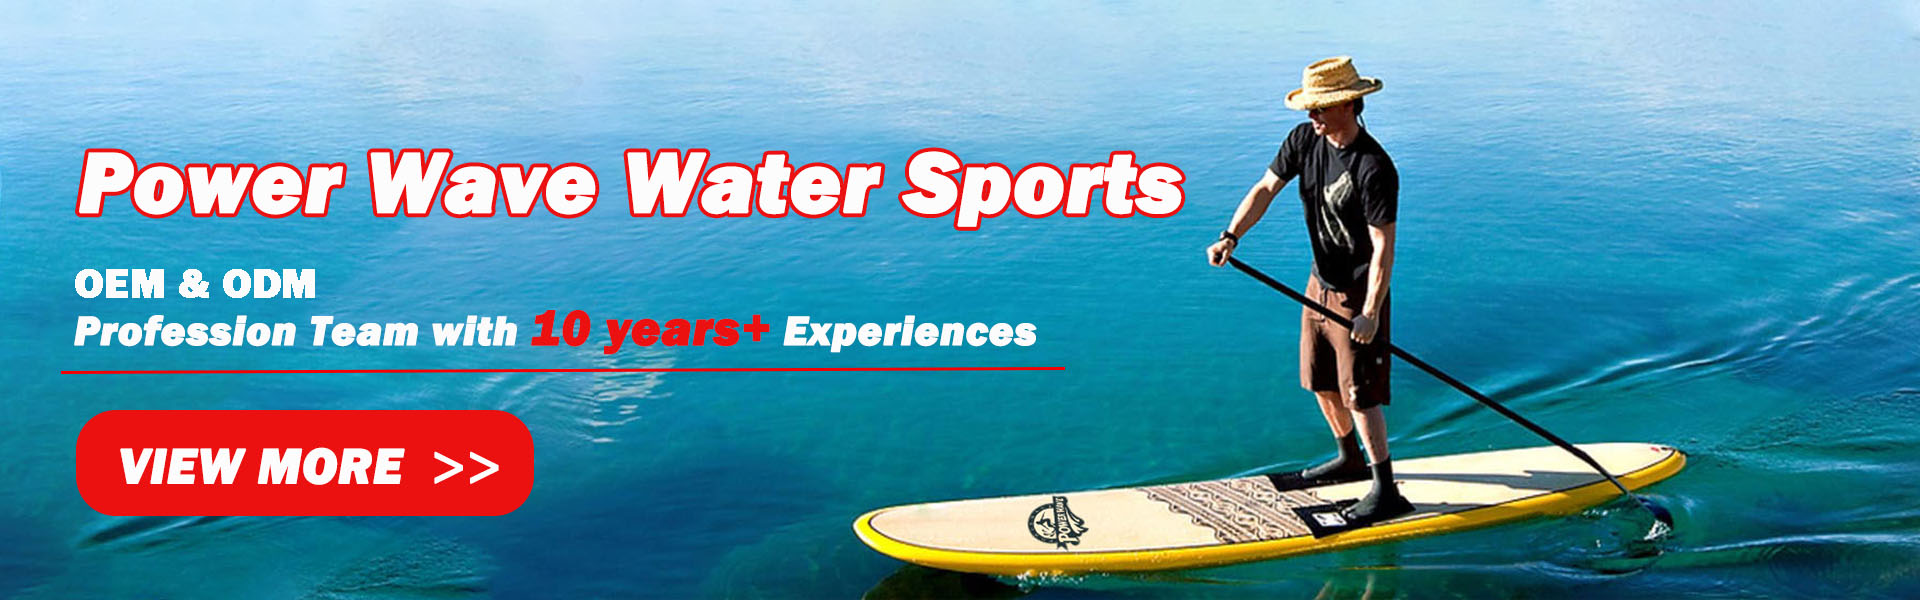 surfbræt, blødt bord, sup,Power Wave Water Sports co.Ltd